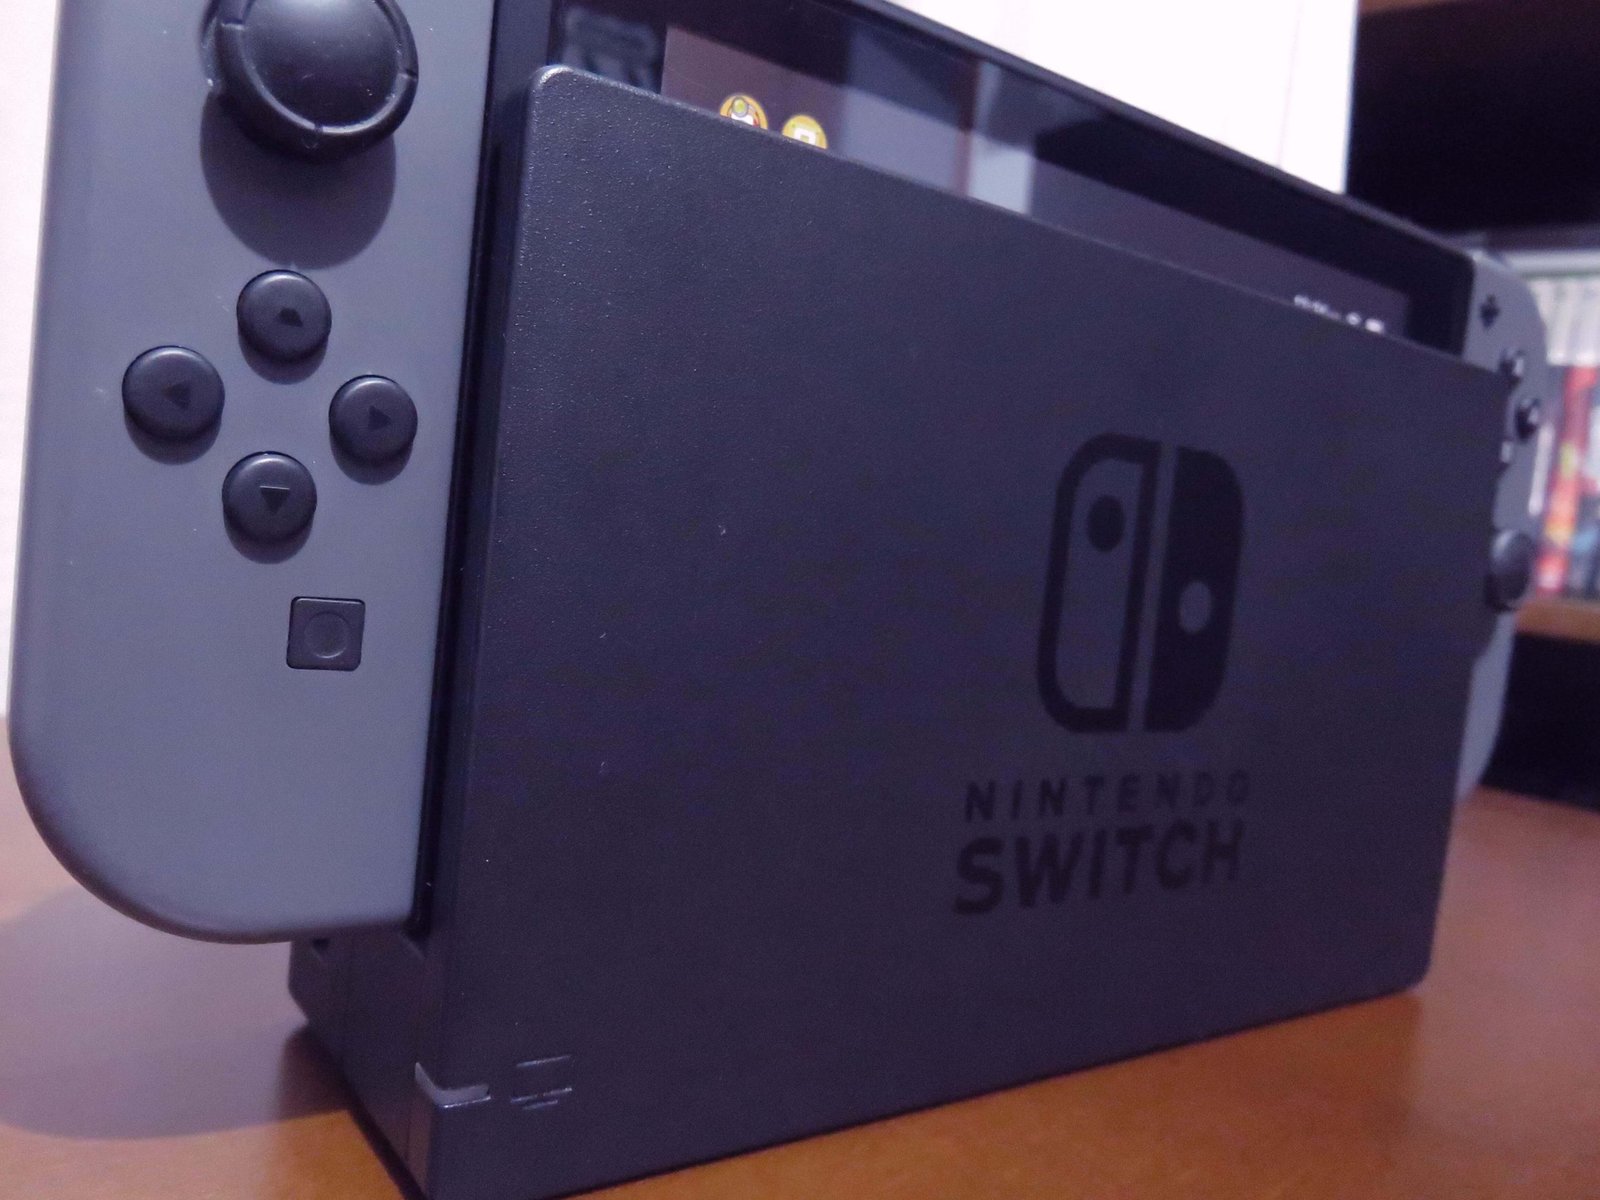 Imagem do console Nintendo Switch.